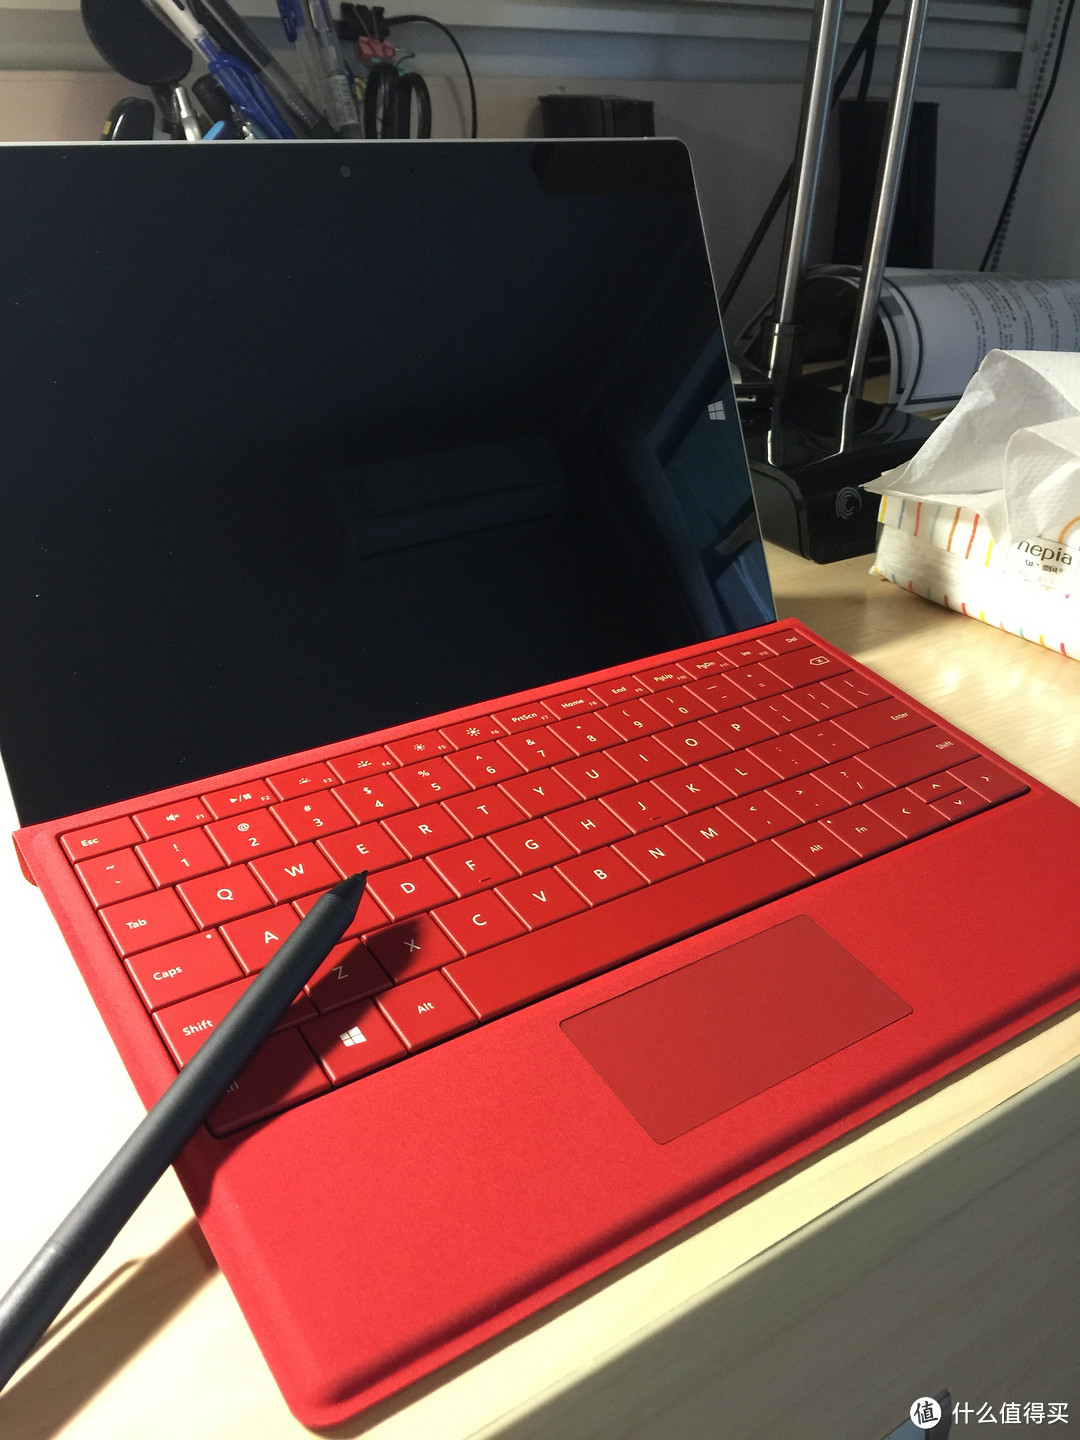 Microsoft 微软 Surface 3 平板电脑开箱以及使用感受